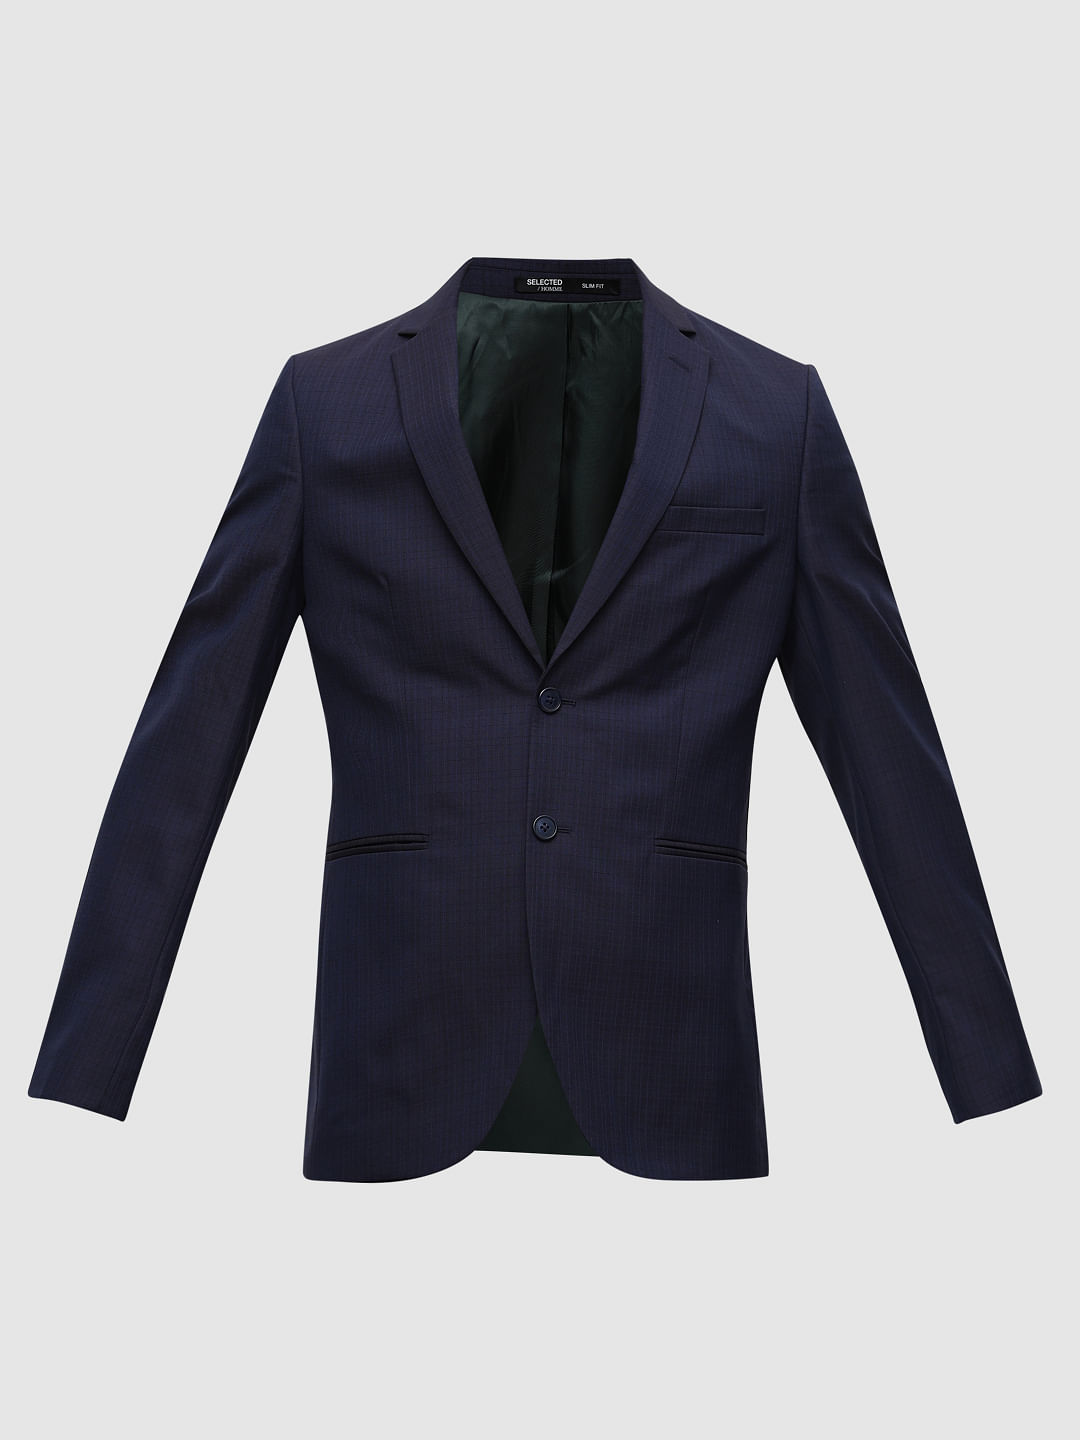 Black Collarless single-breasted suit jacket | Lardini | MATCHES UK